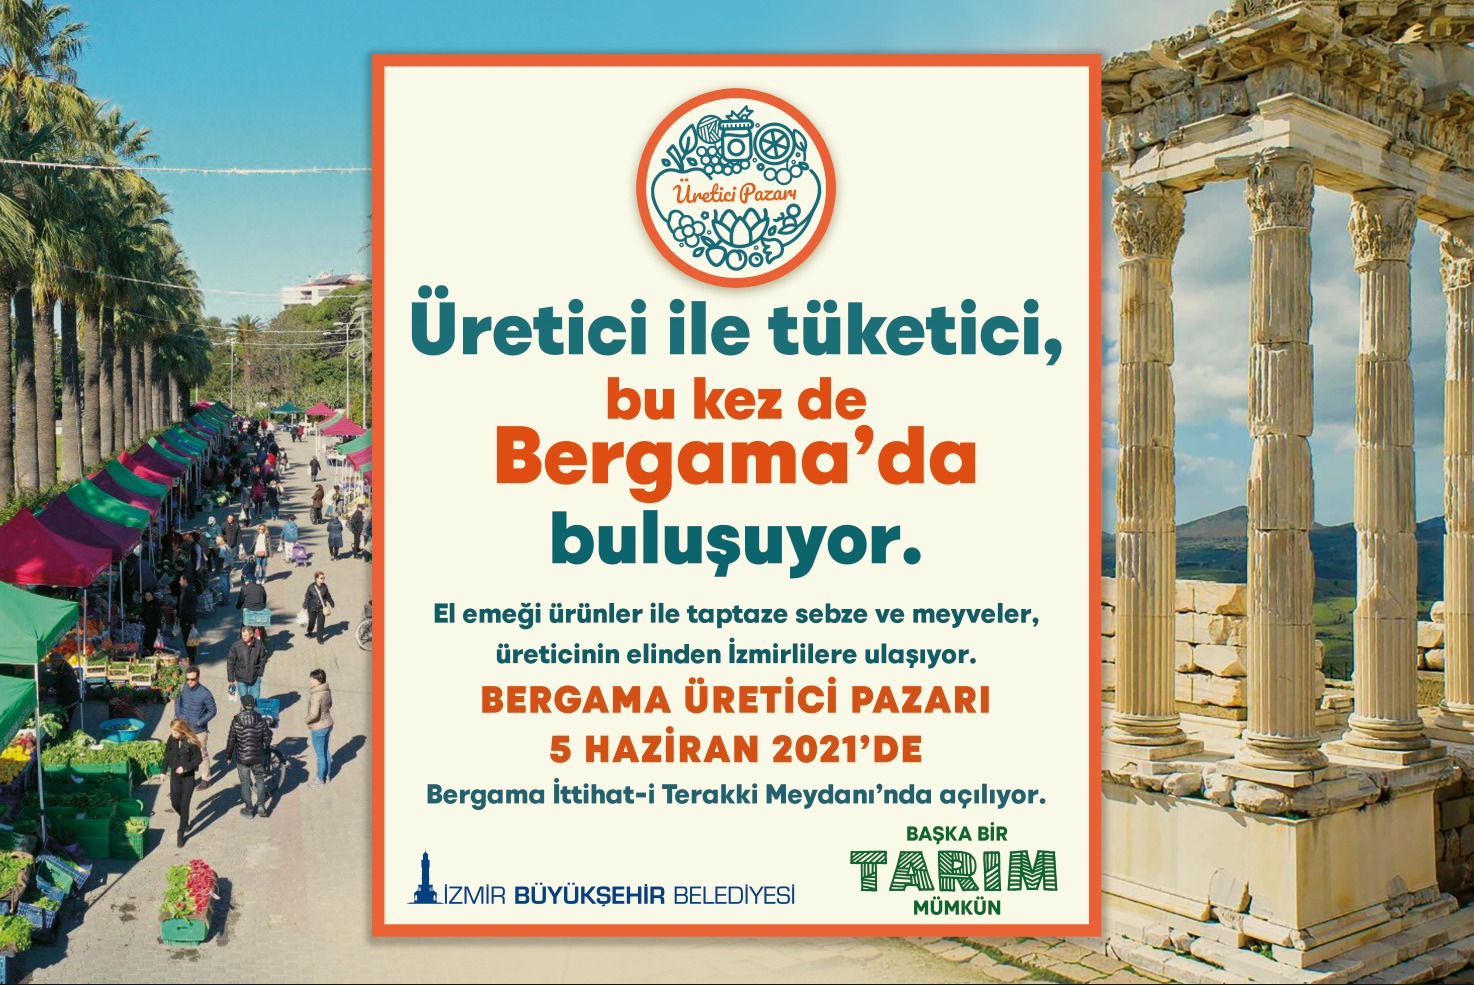  İzmir Büyükşehir İle BM Arasında İşbirliği Mutabakatı